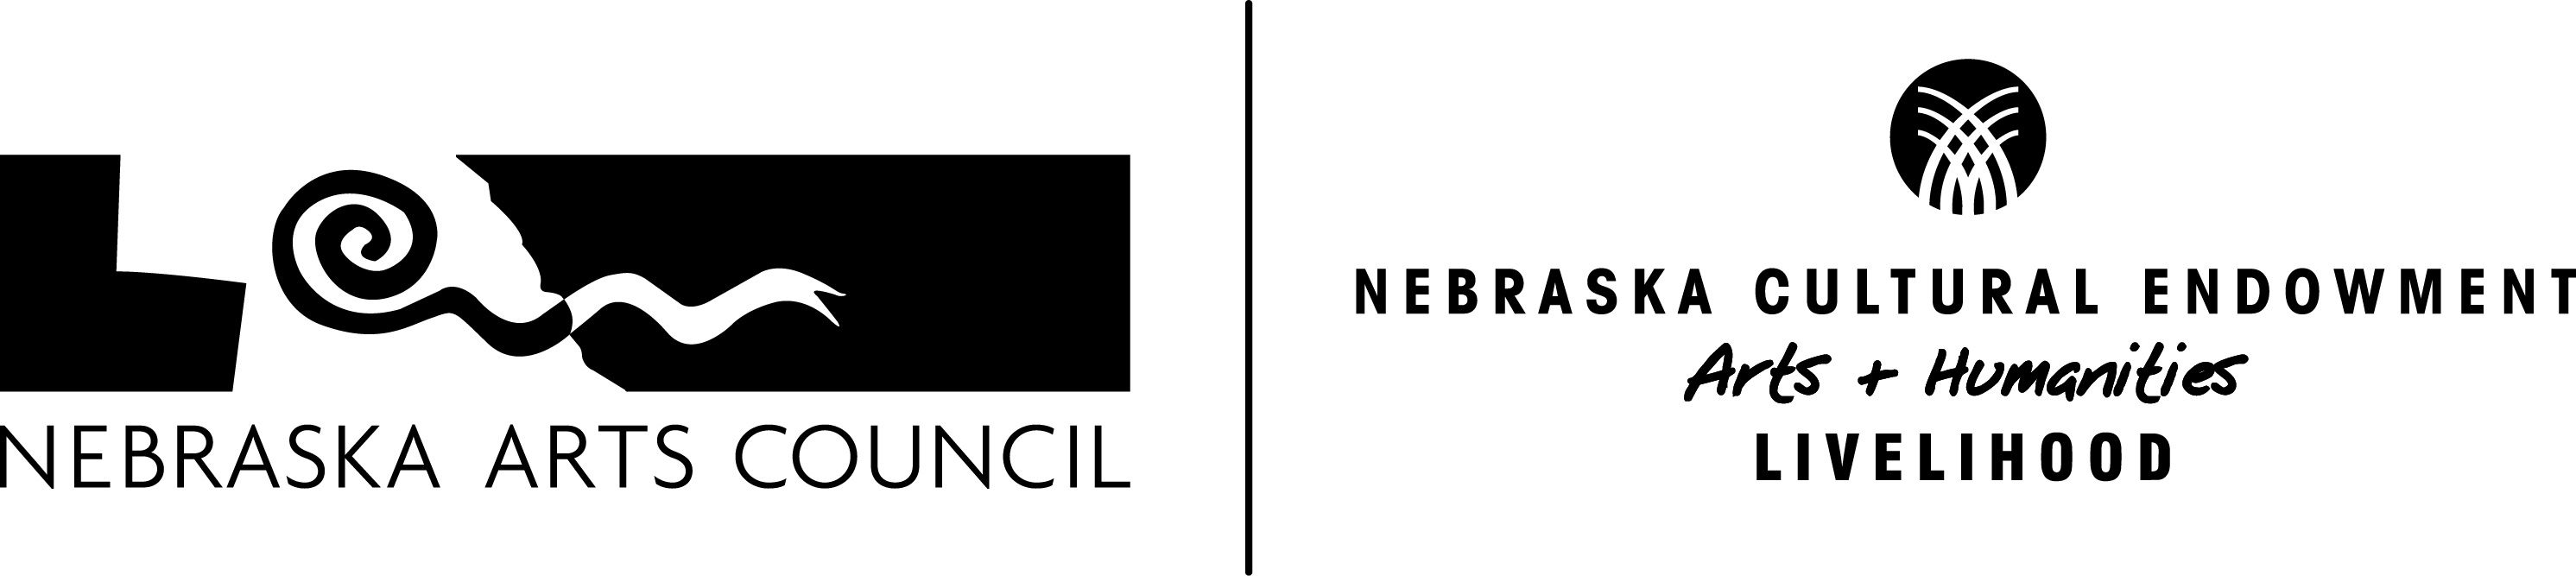 Nebraska Arts Council/Nebraska Cultural Endowment